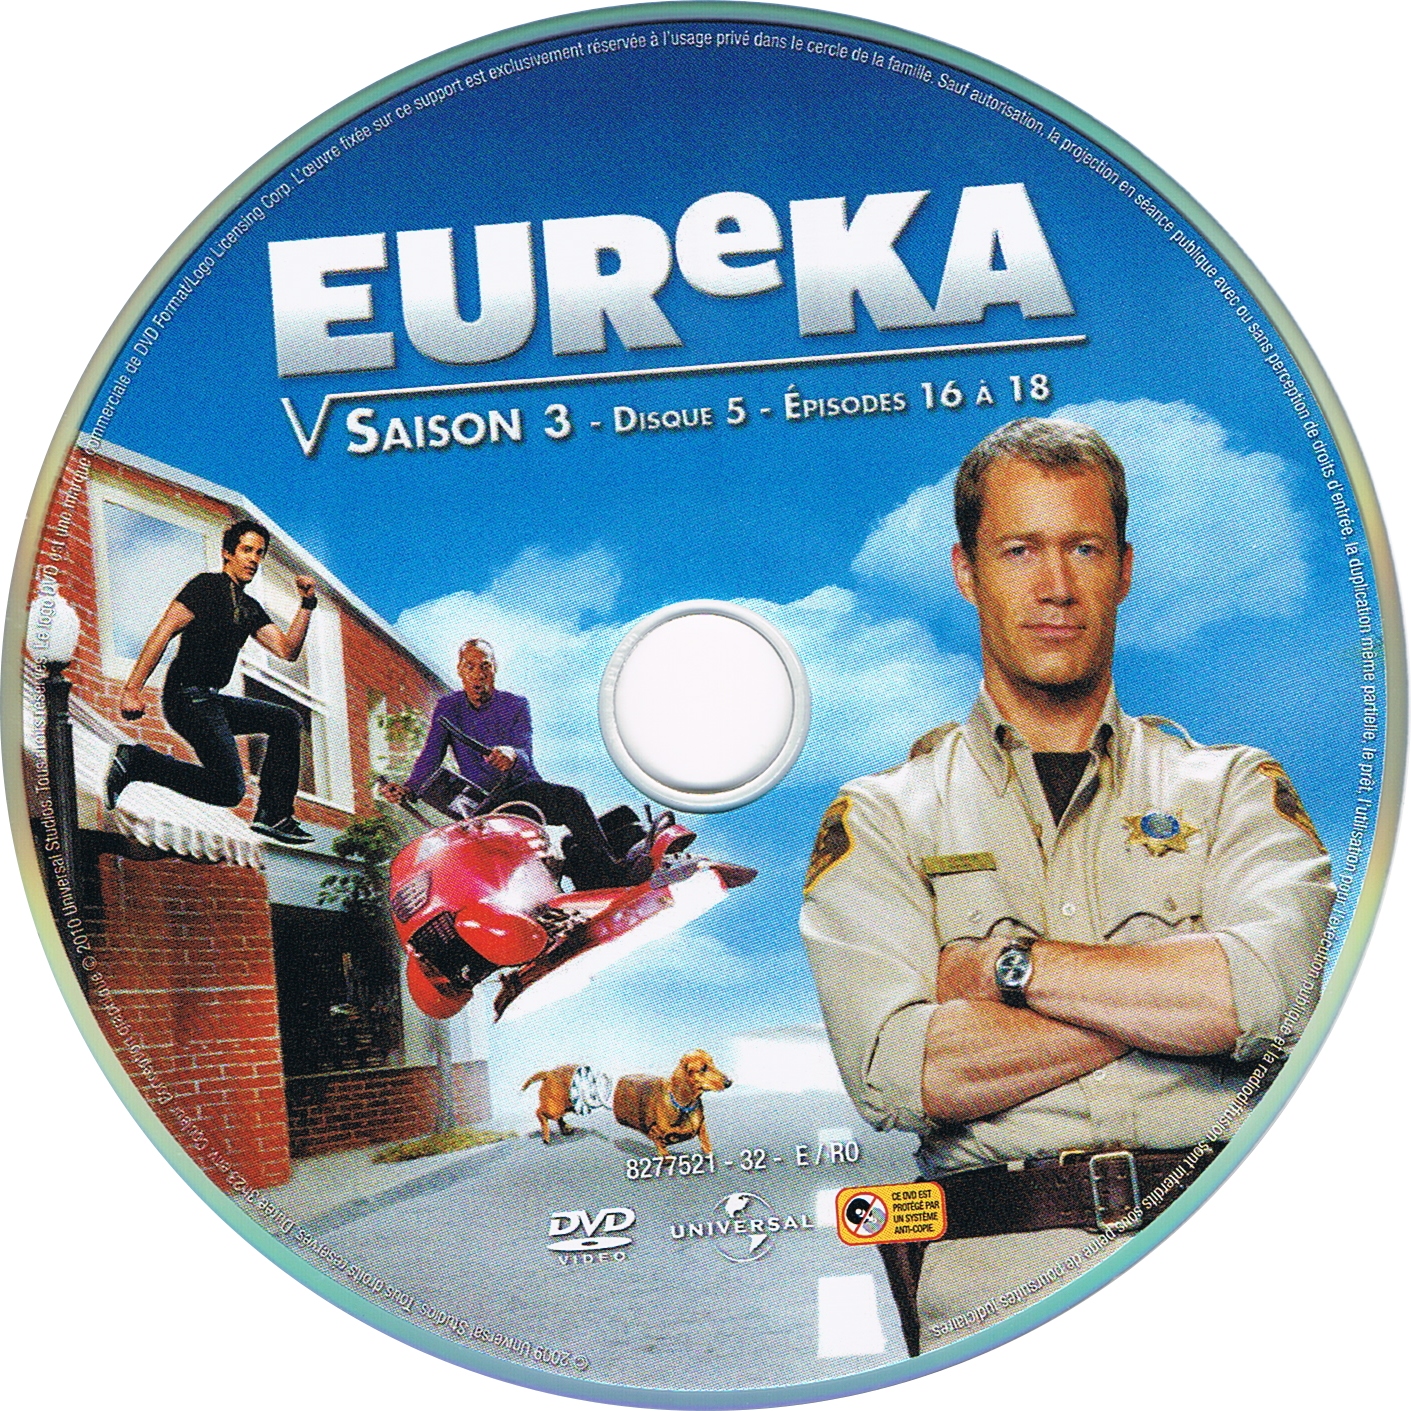 Eureka saison 3 DISC 5